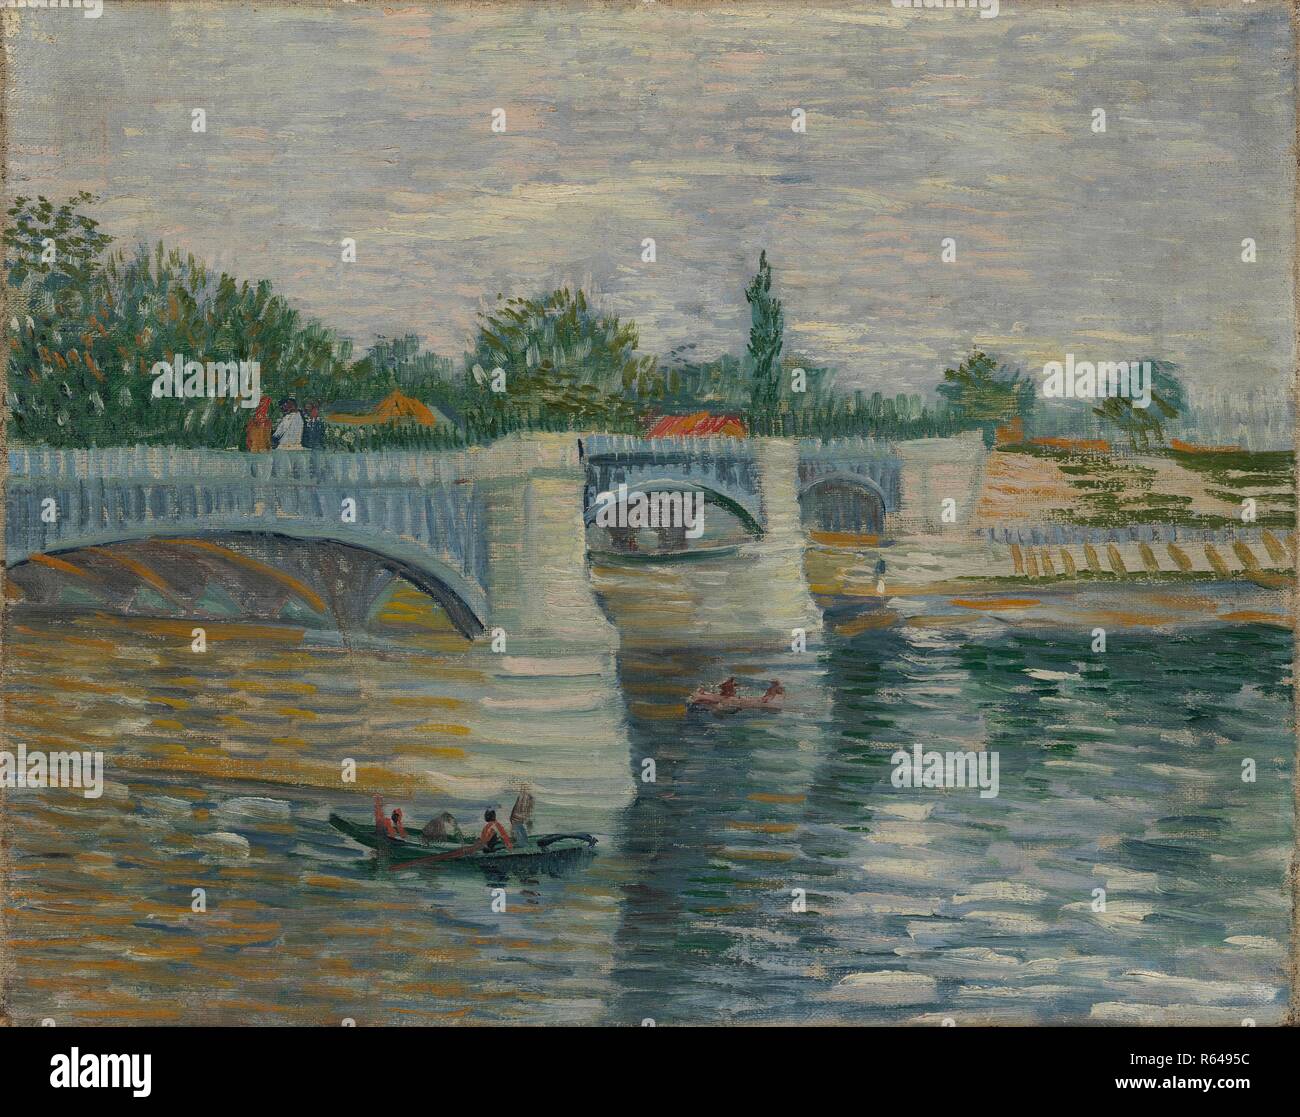 The Bridge at Courbevoie. Date: May-July 1887, Paris. Dimensions: 32.1 cm x 40.5 cm, 47.5 cm x 56 cm. Museum: Van Gogh Museum, Amsterdam. Author: VAN GOGH, VINCENT. VINCENT VAN GOGH. Stock Photo